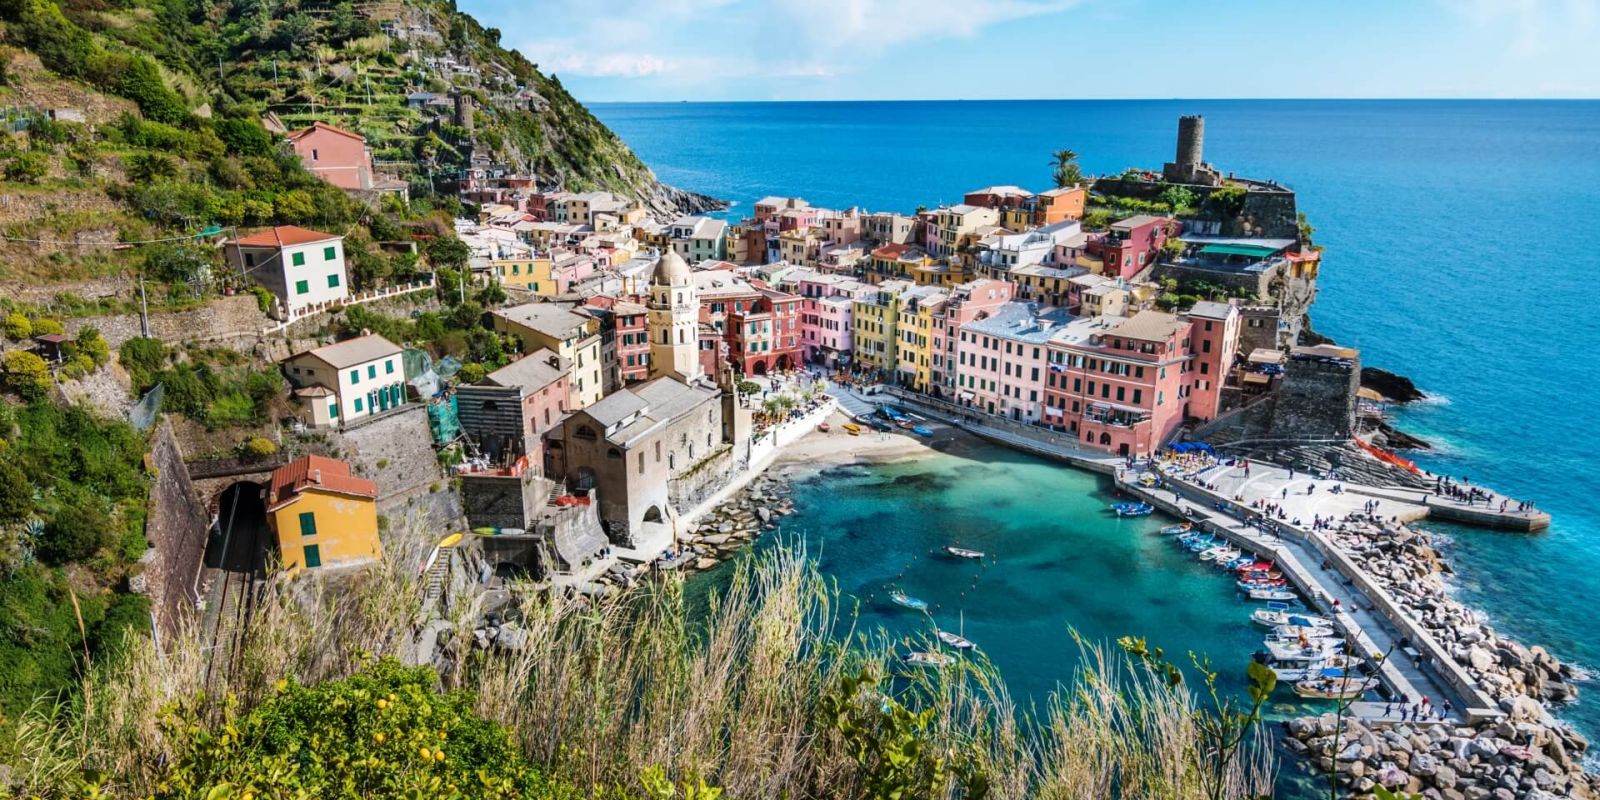 Location yacht Riviera italienne Portofino et Cinque Terre, louer un yacht sur la Riviera italienne